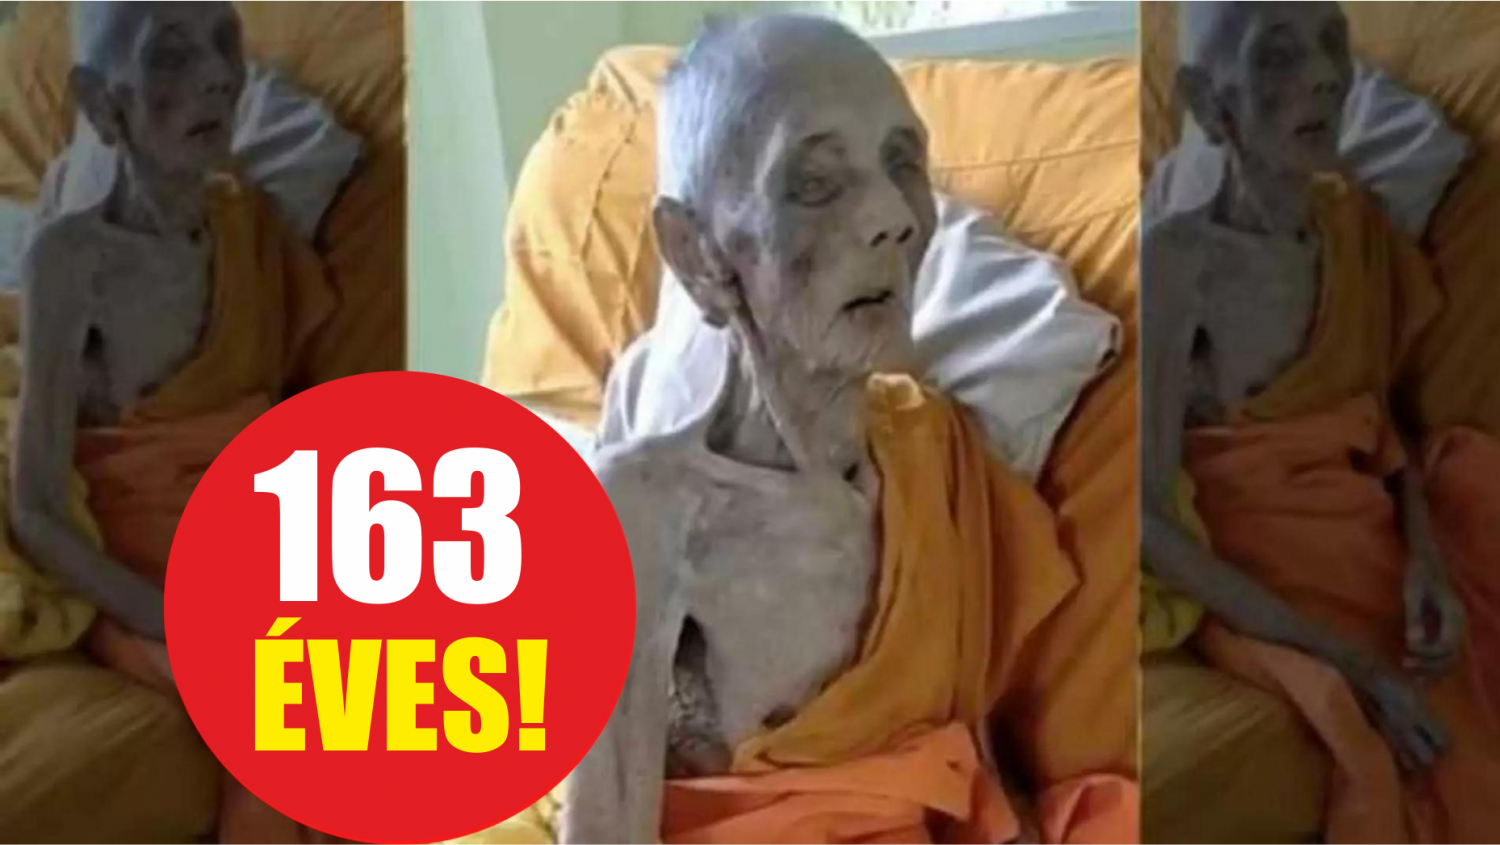 VIDEO! Állítólag ez a thai szerzetes már 163 éves!